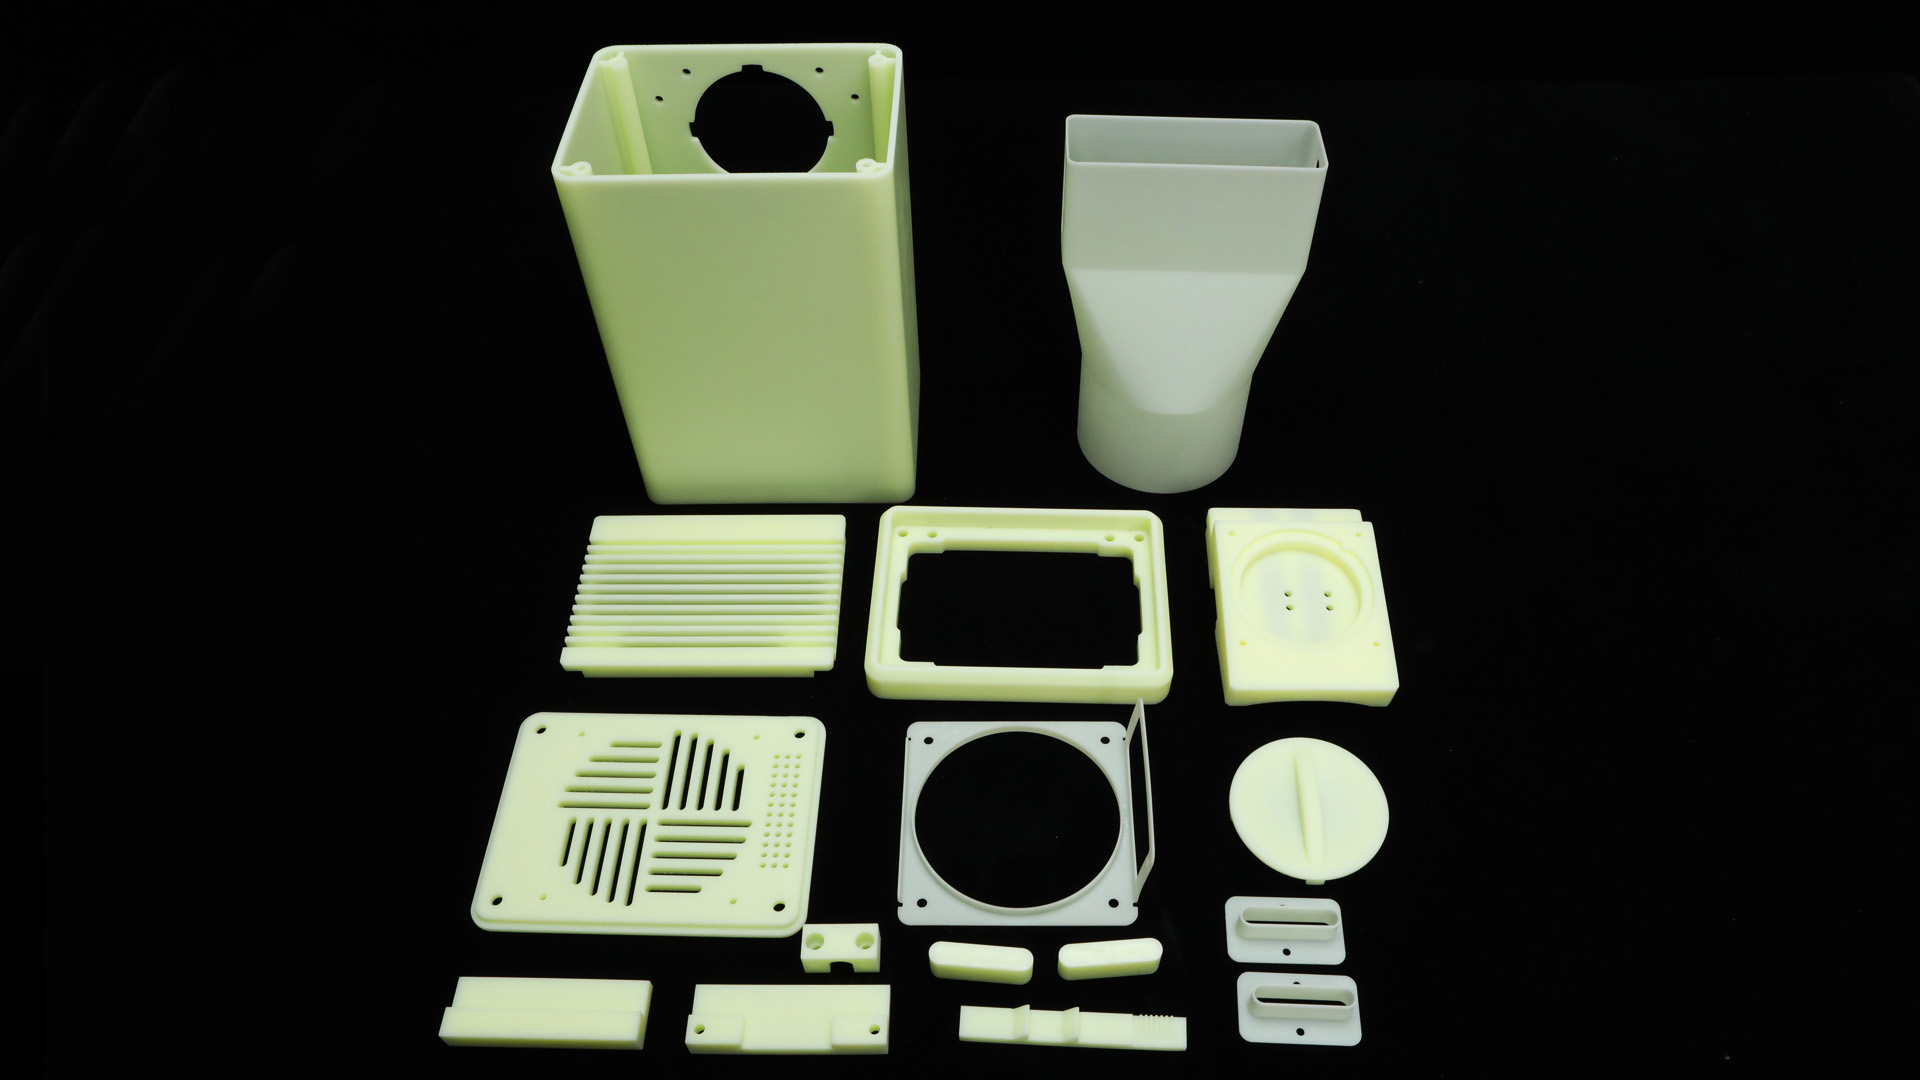 ACME Cost-Effective Industrial SLA 3D Printer HI600 and HI800